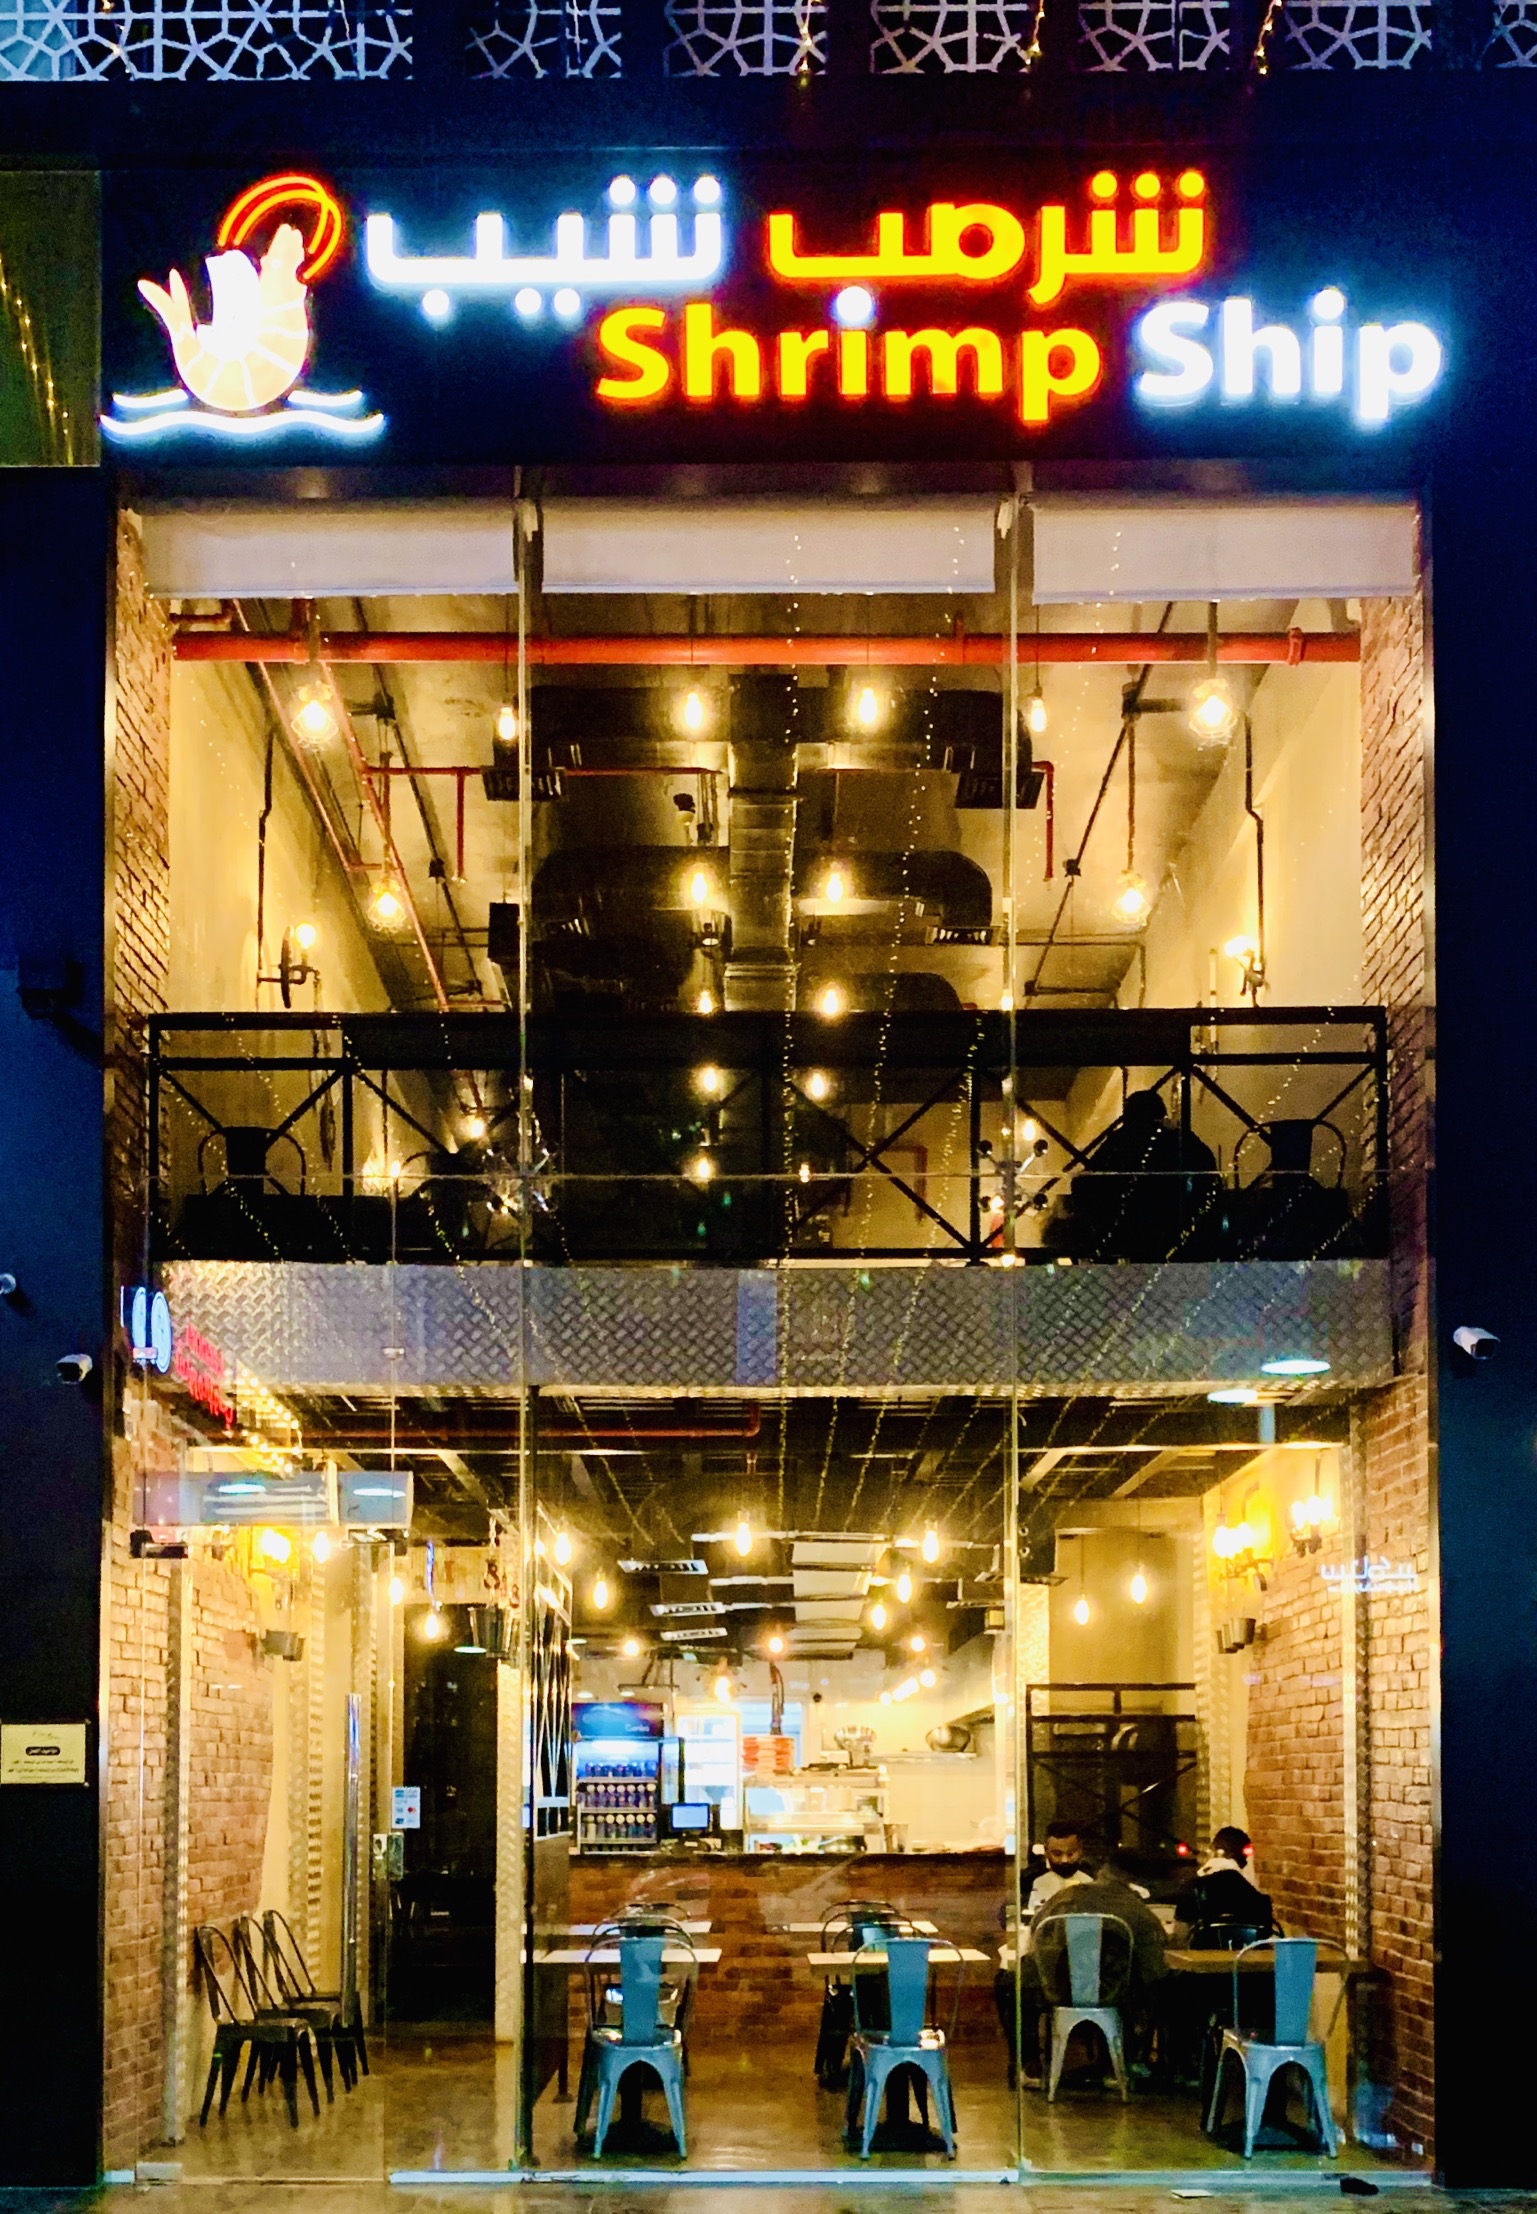 مطعم شريمب شيب